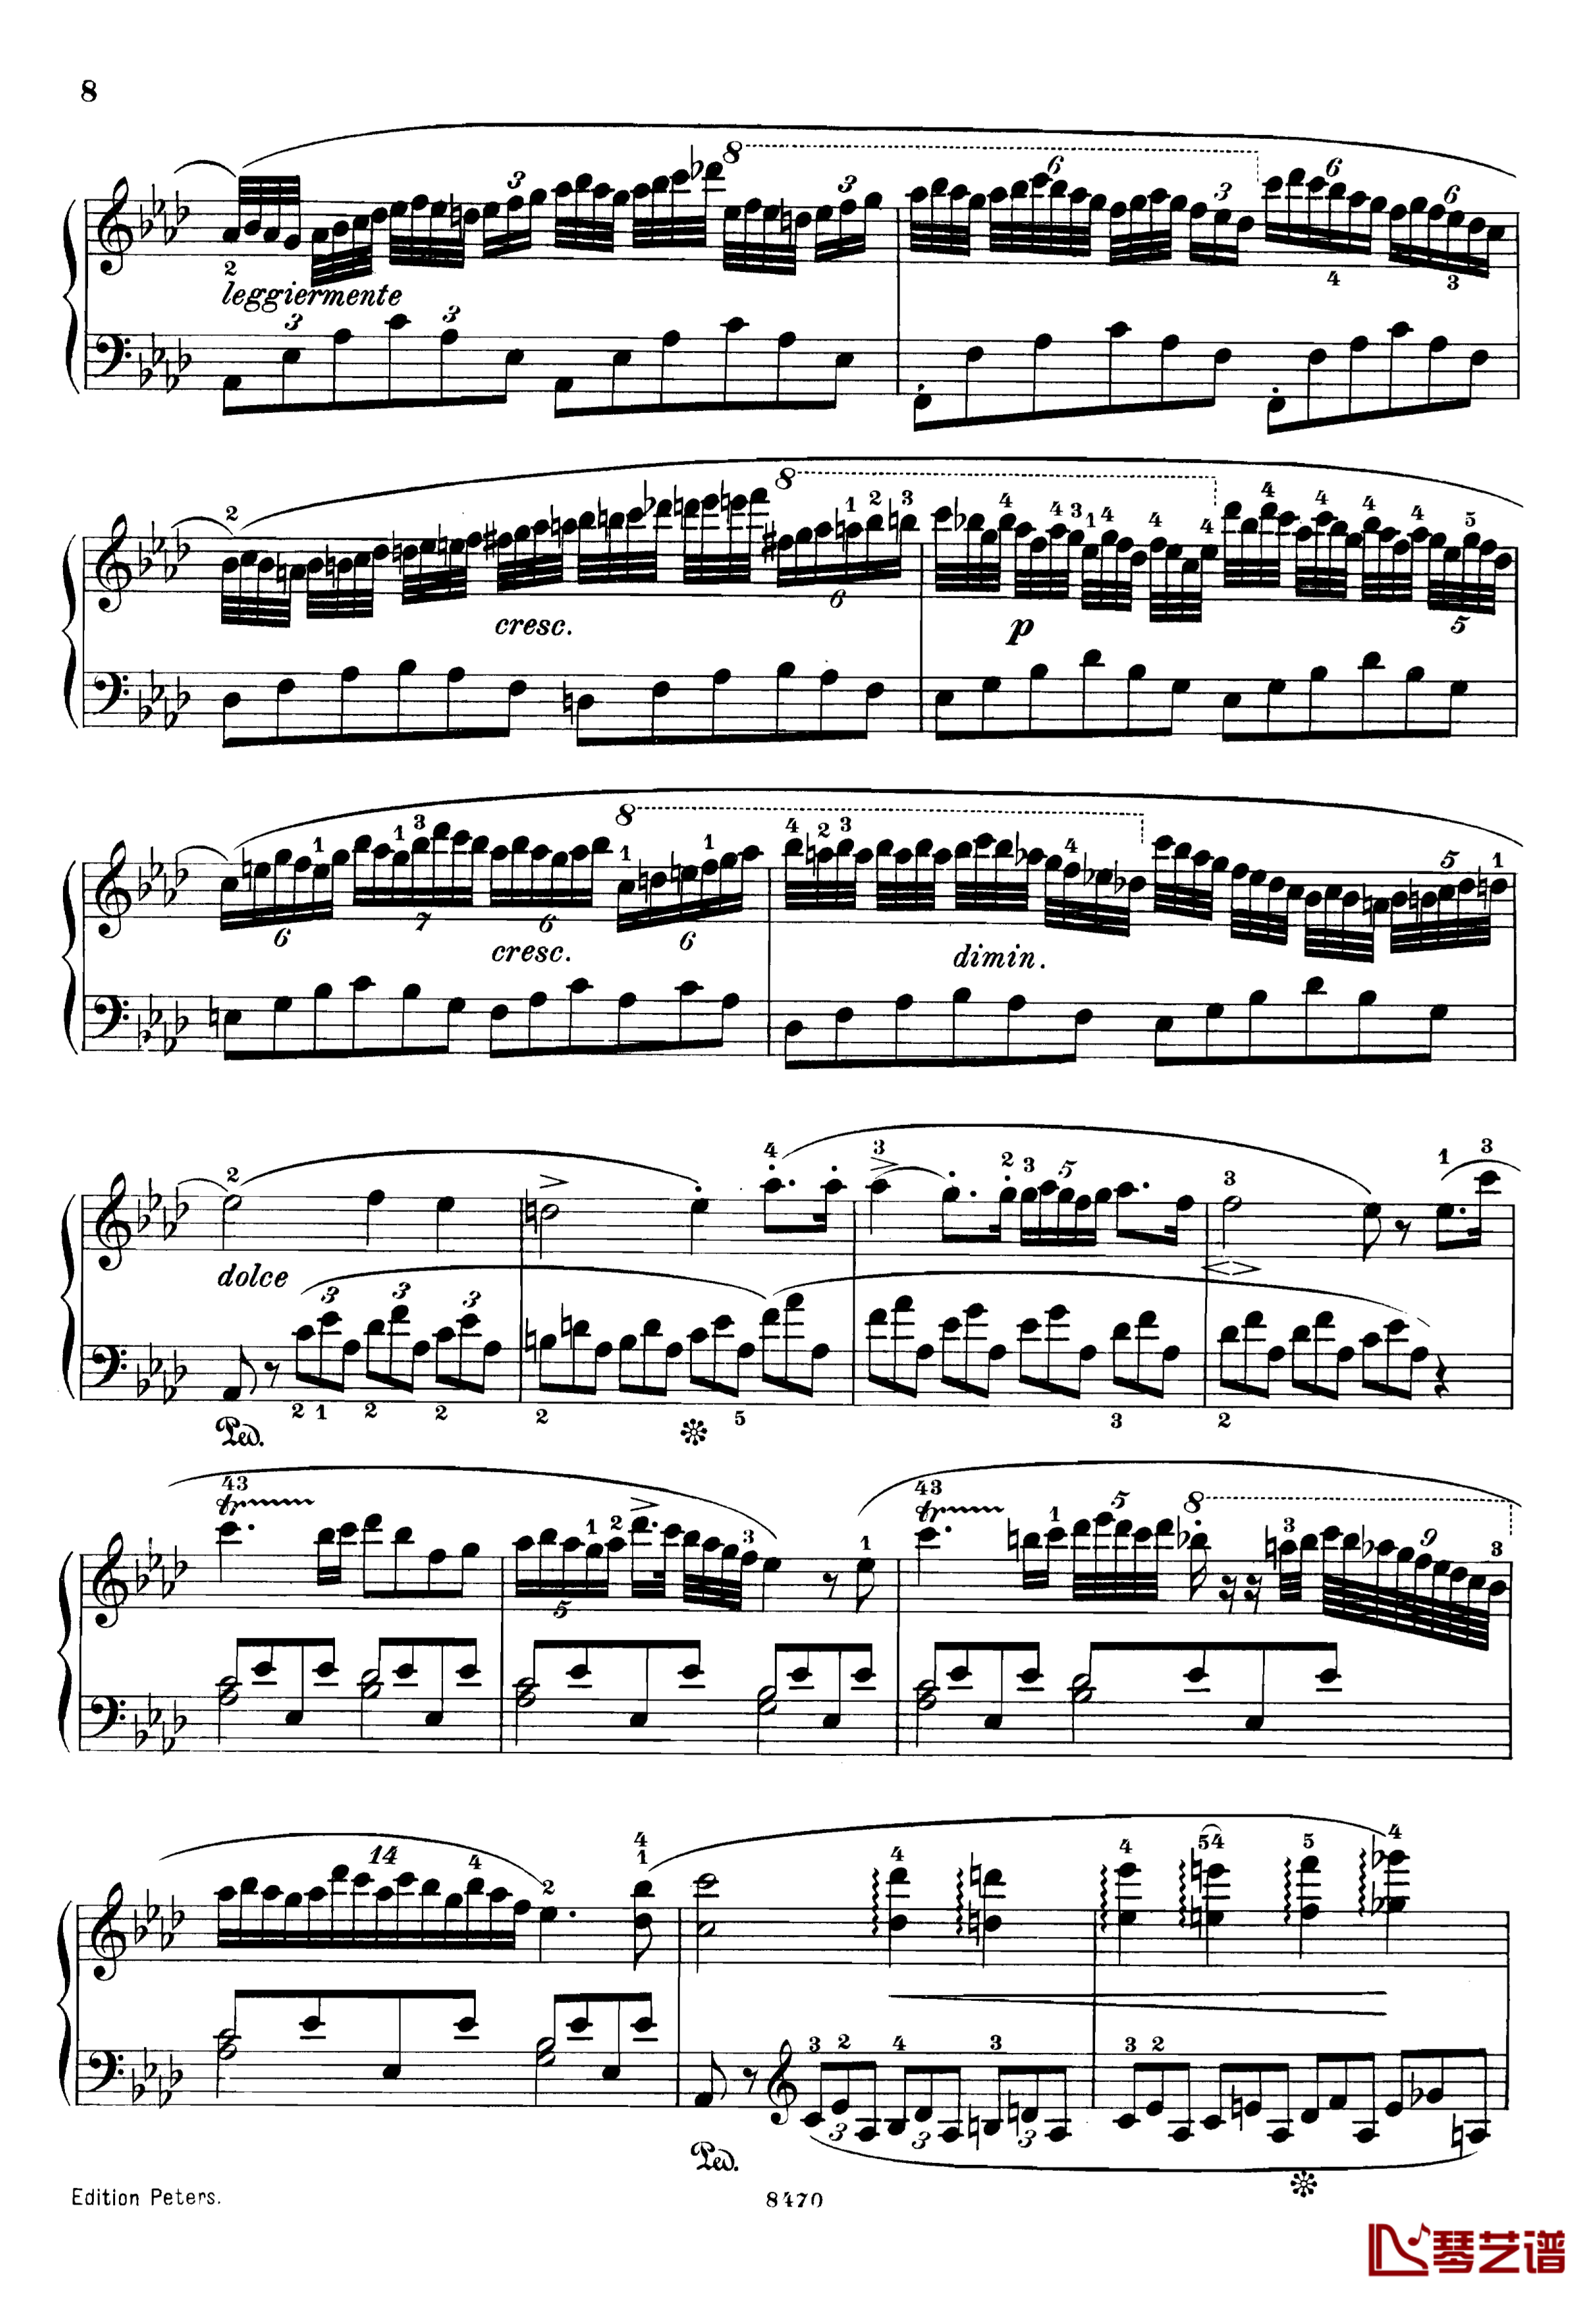 升c小调第三钢琴协奏曲Op.55钢琴谱-克里斯蒂安-里斯8